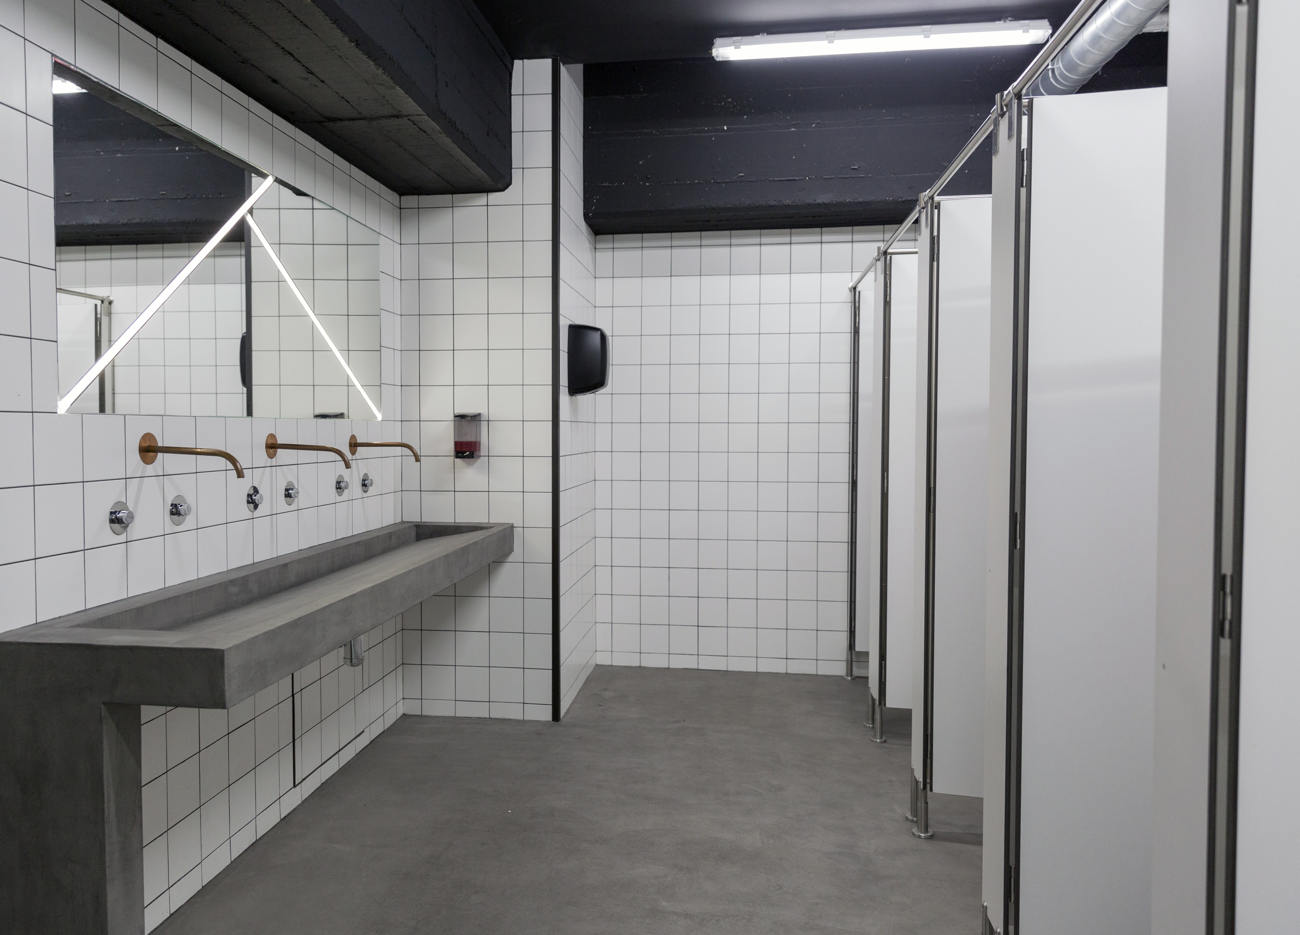 Salle de bain avec microbéton au sol et lavabo.